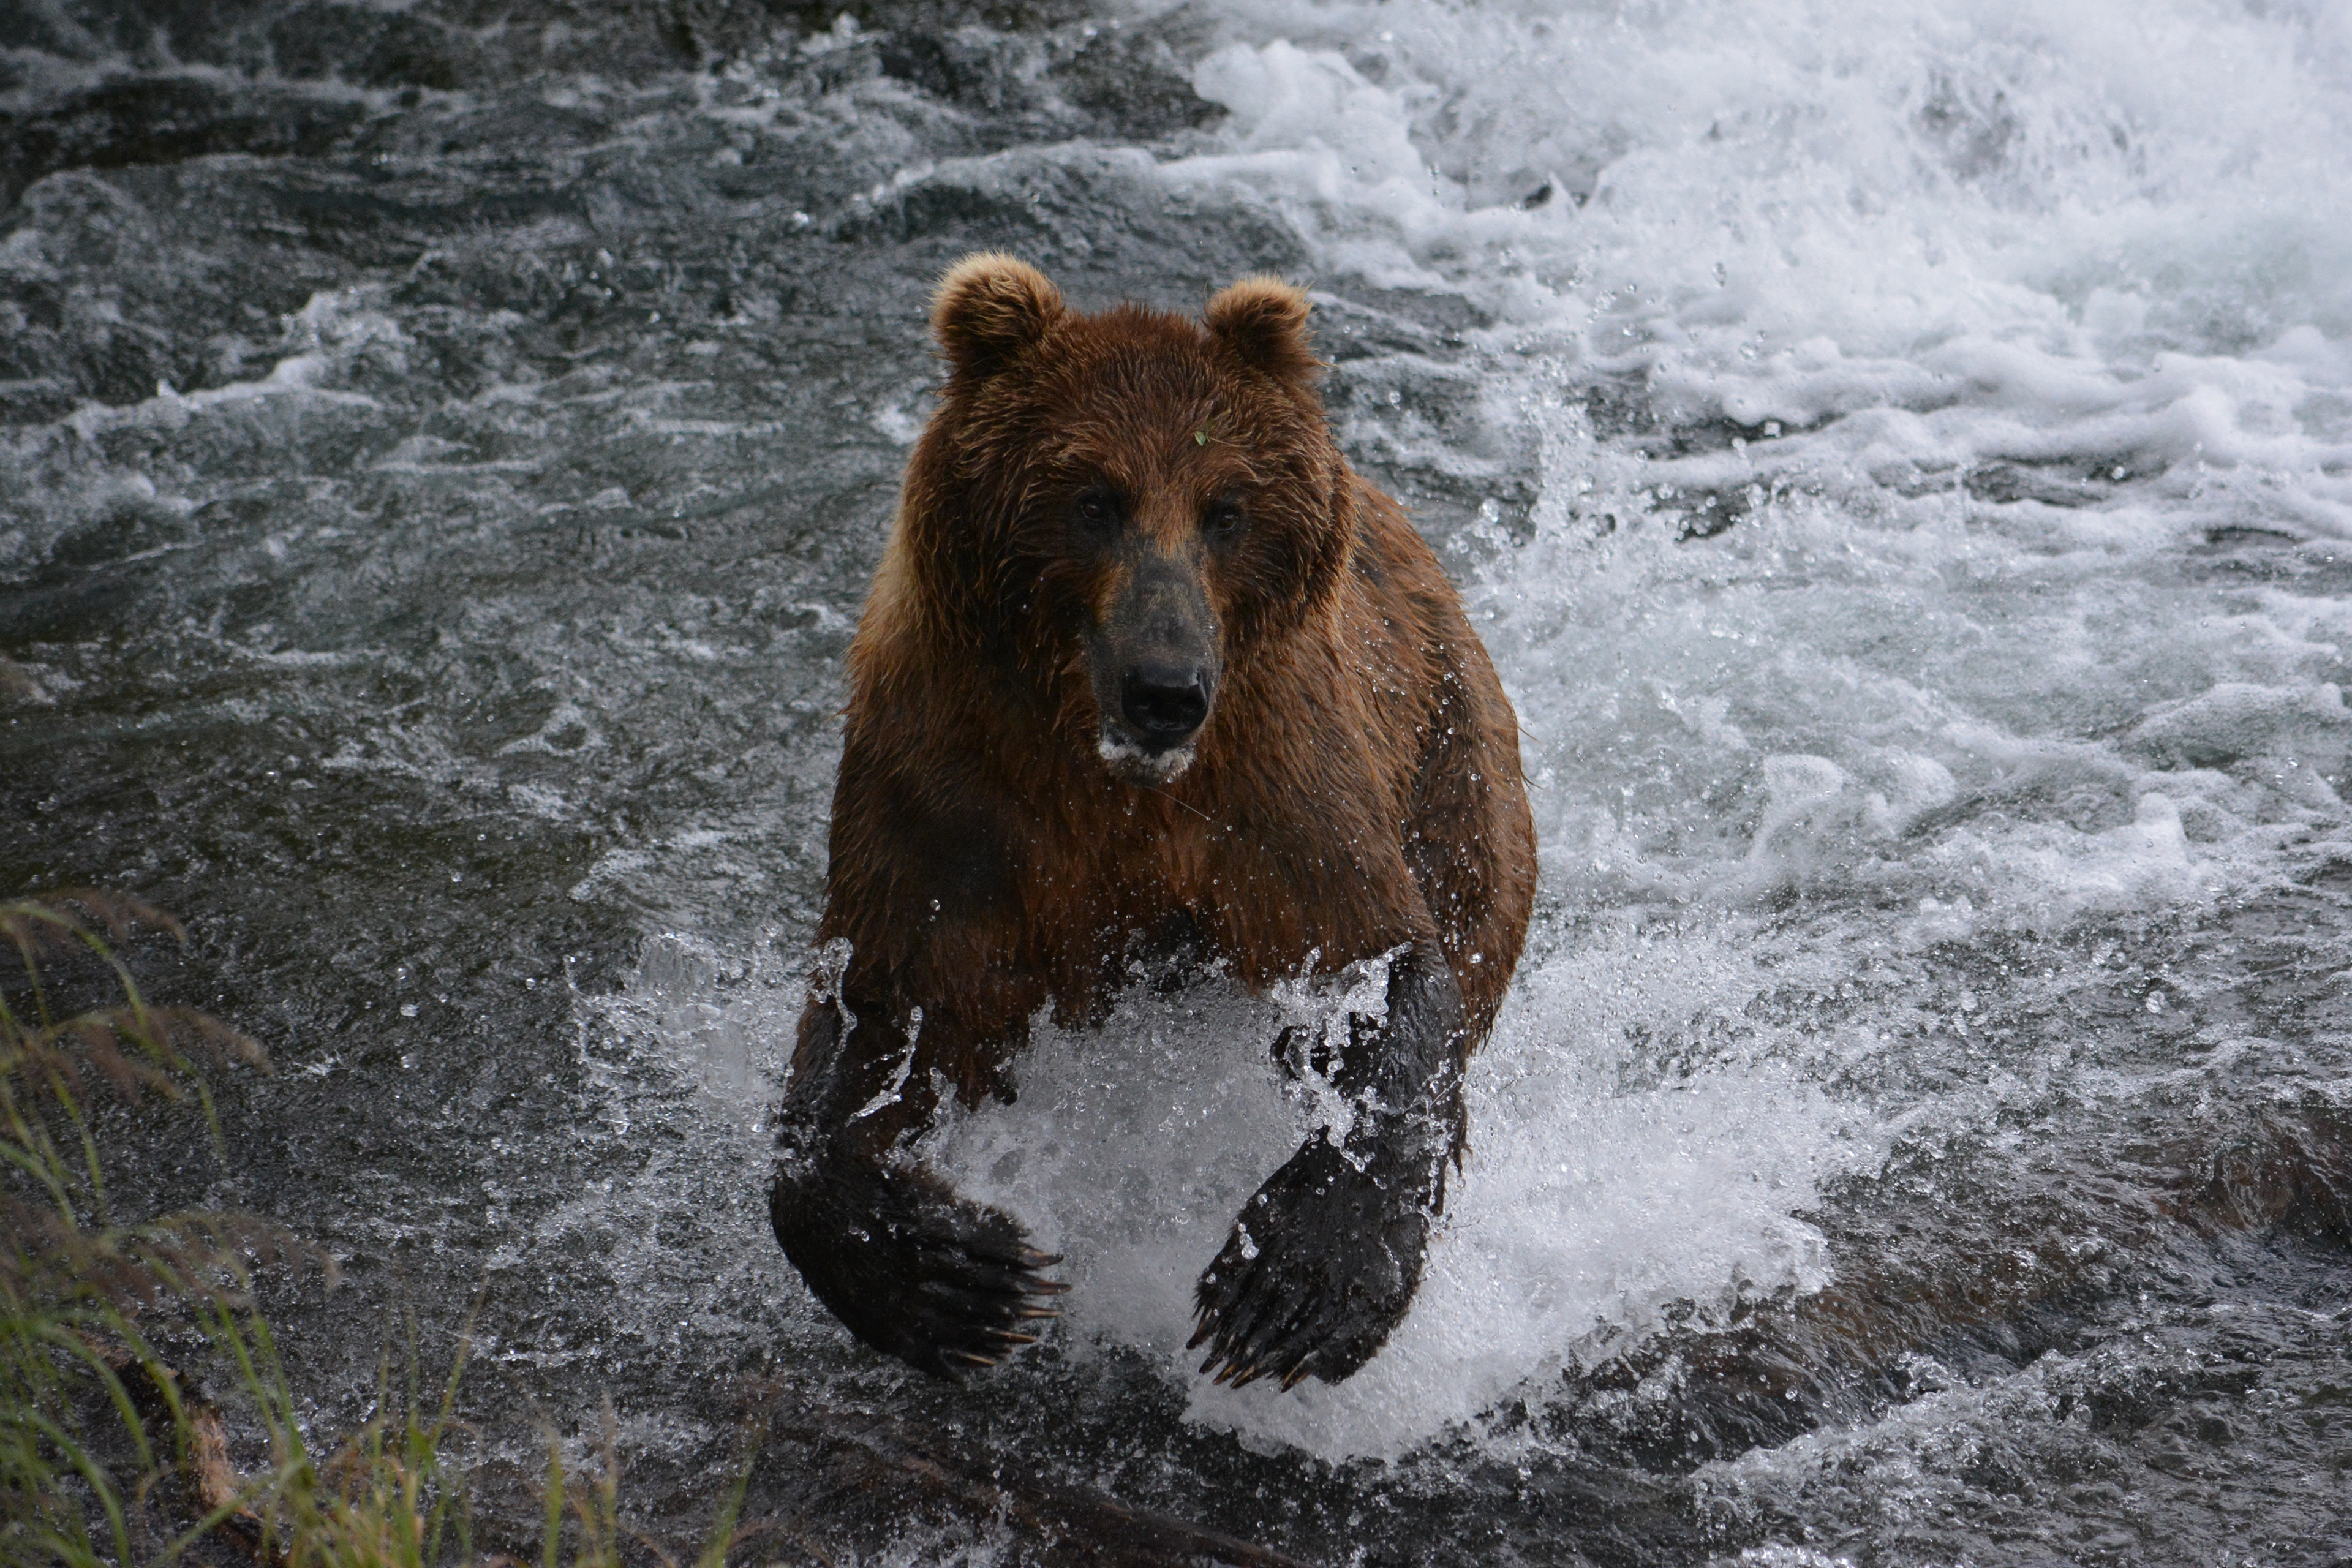 Медведь бежит по воде